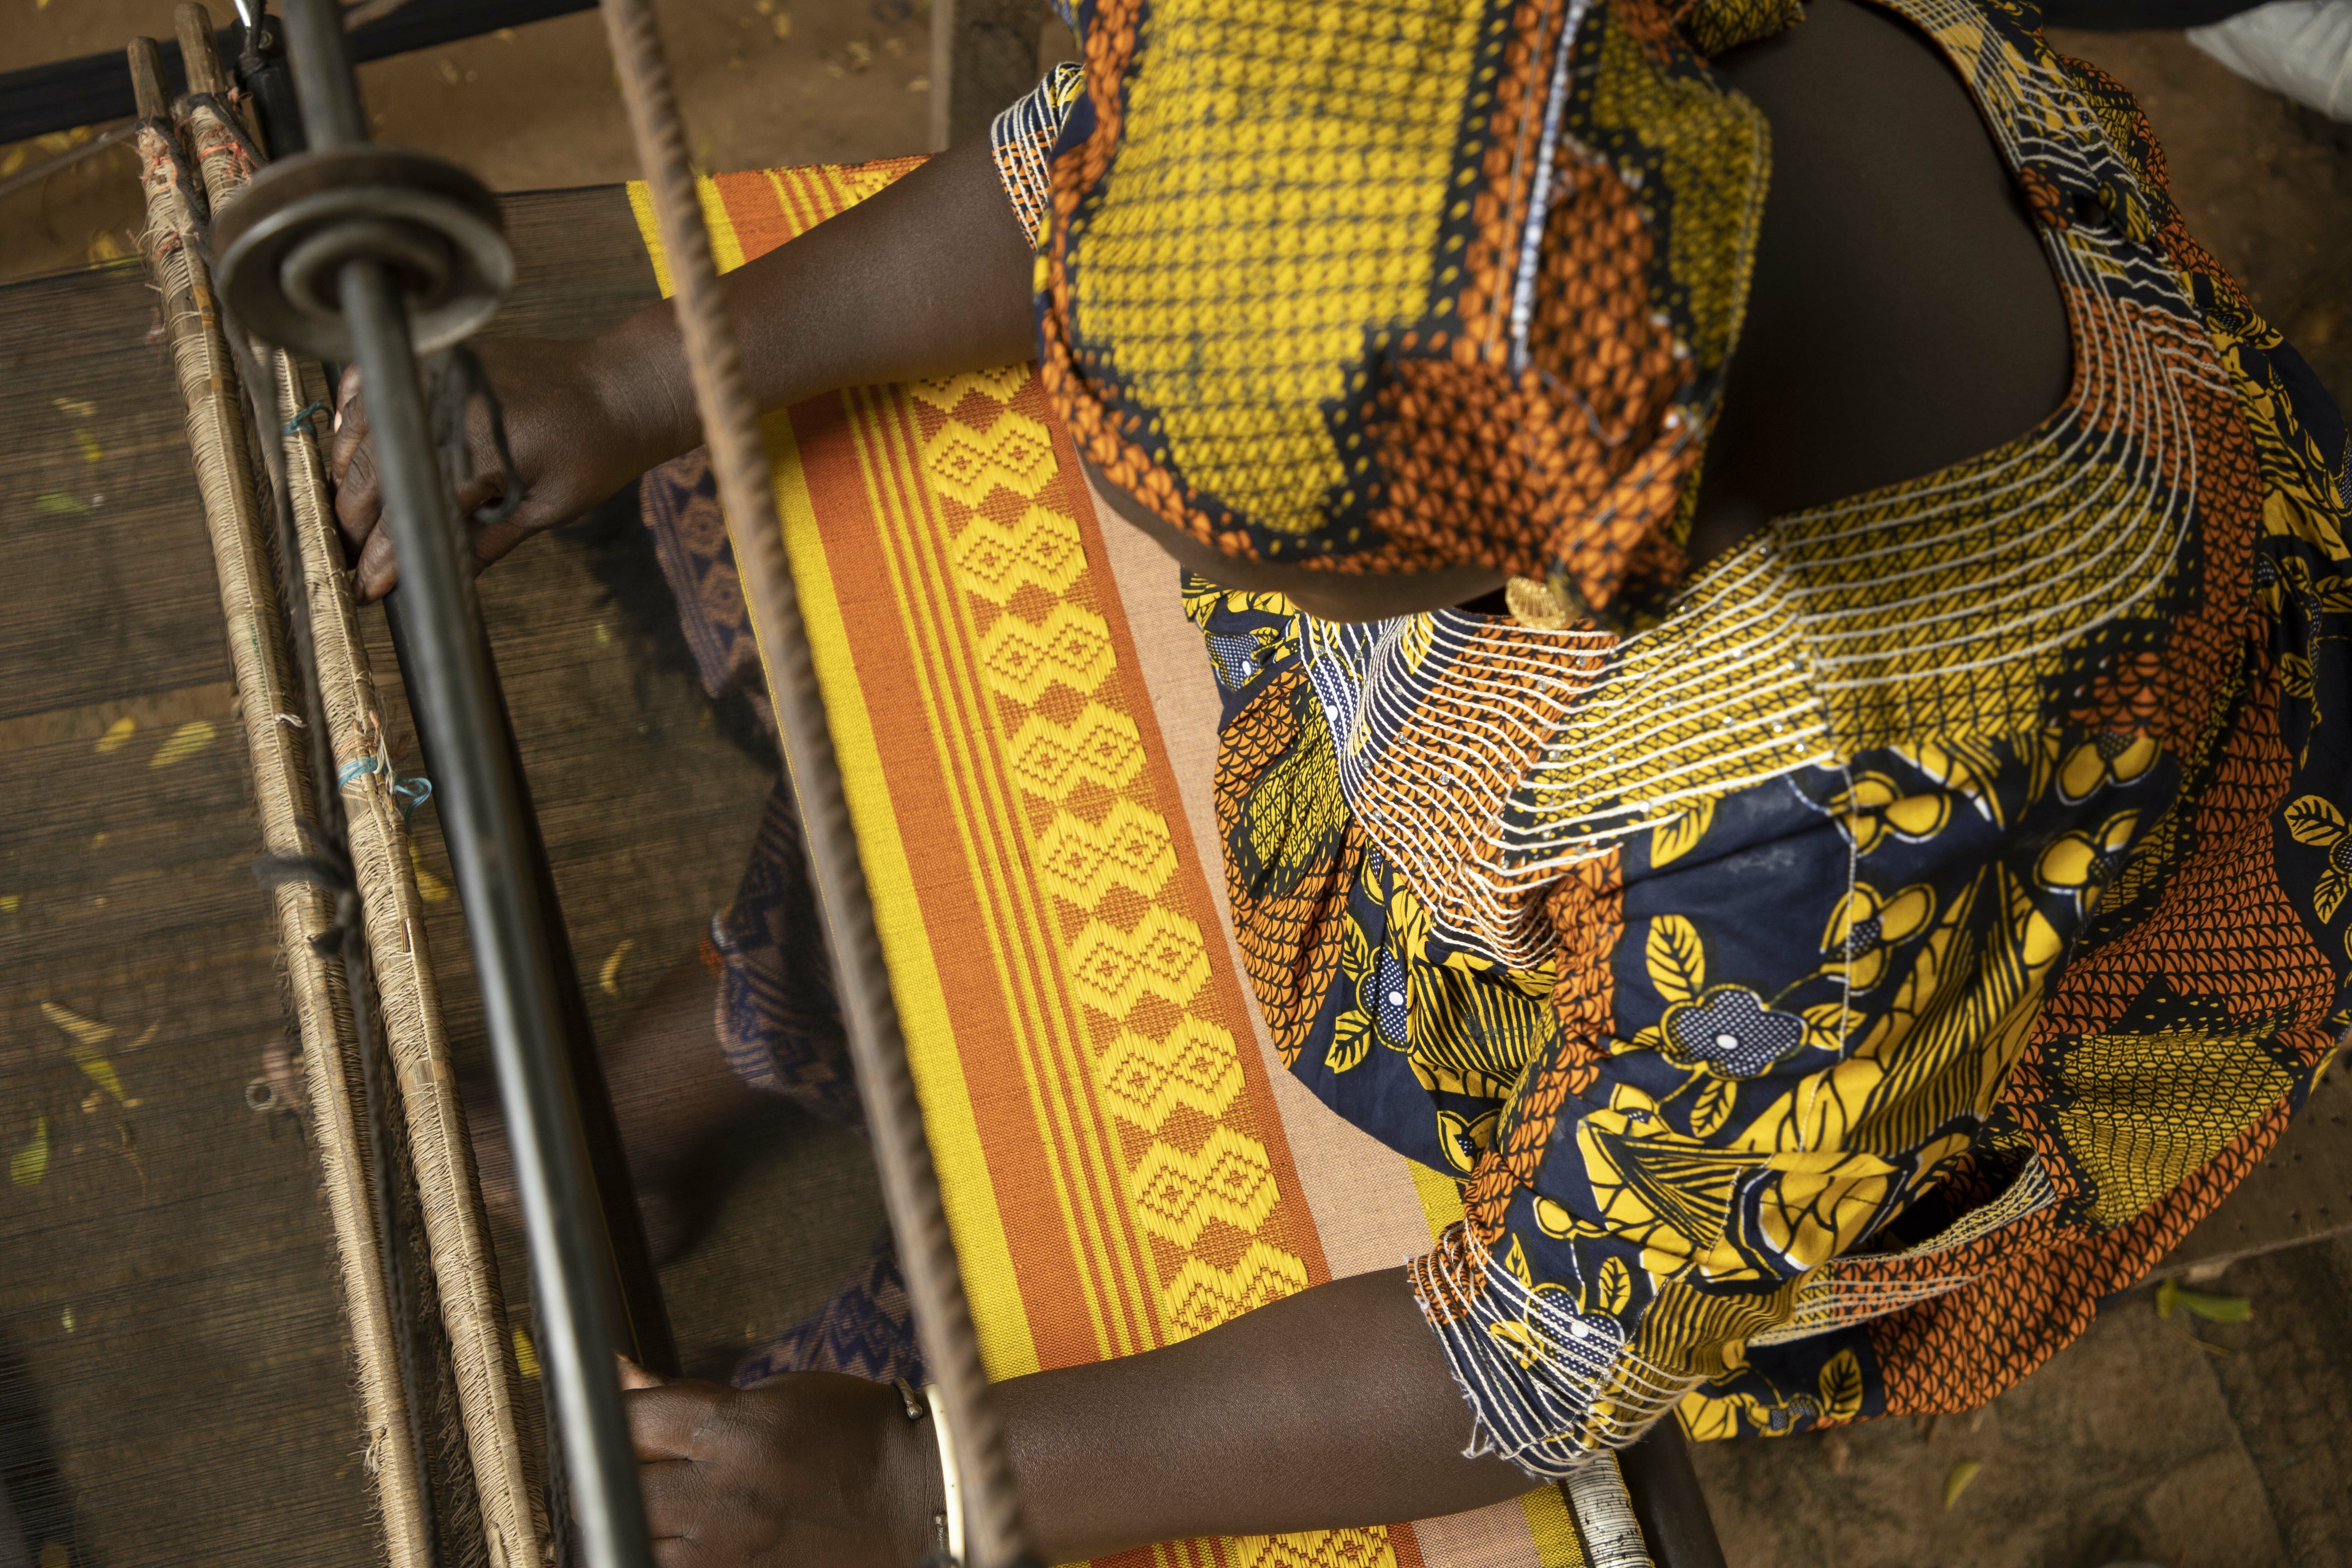 Textile work at the Dakar Design Hub